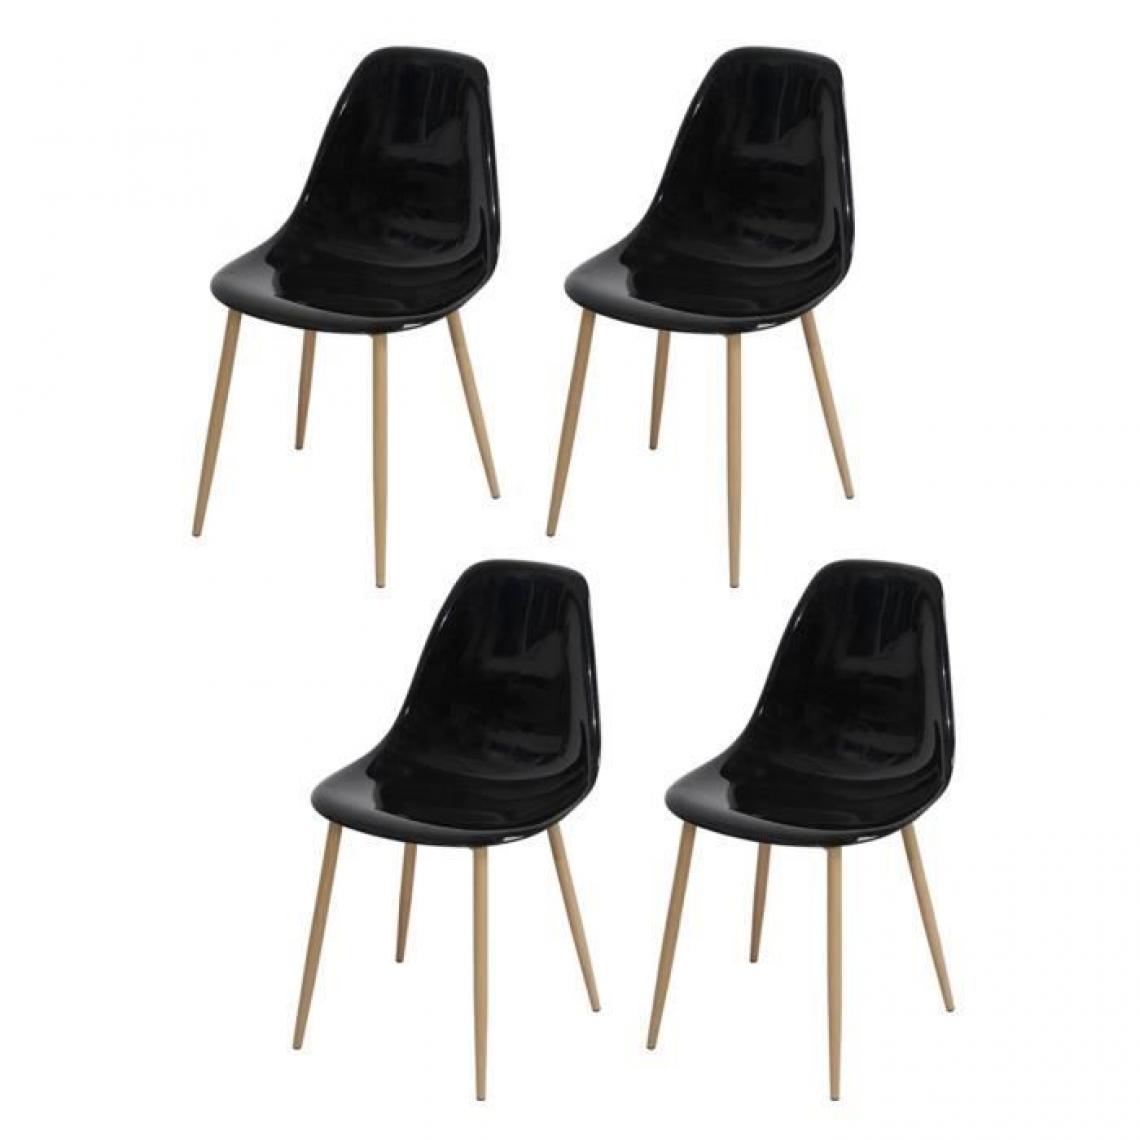 Cstore - Lot de 4 chaises cristal transparent noir - L 47 x P 54 x H 84 cm - CLODY - Chaises